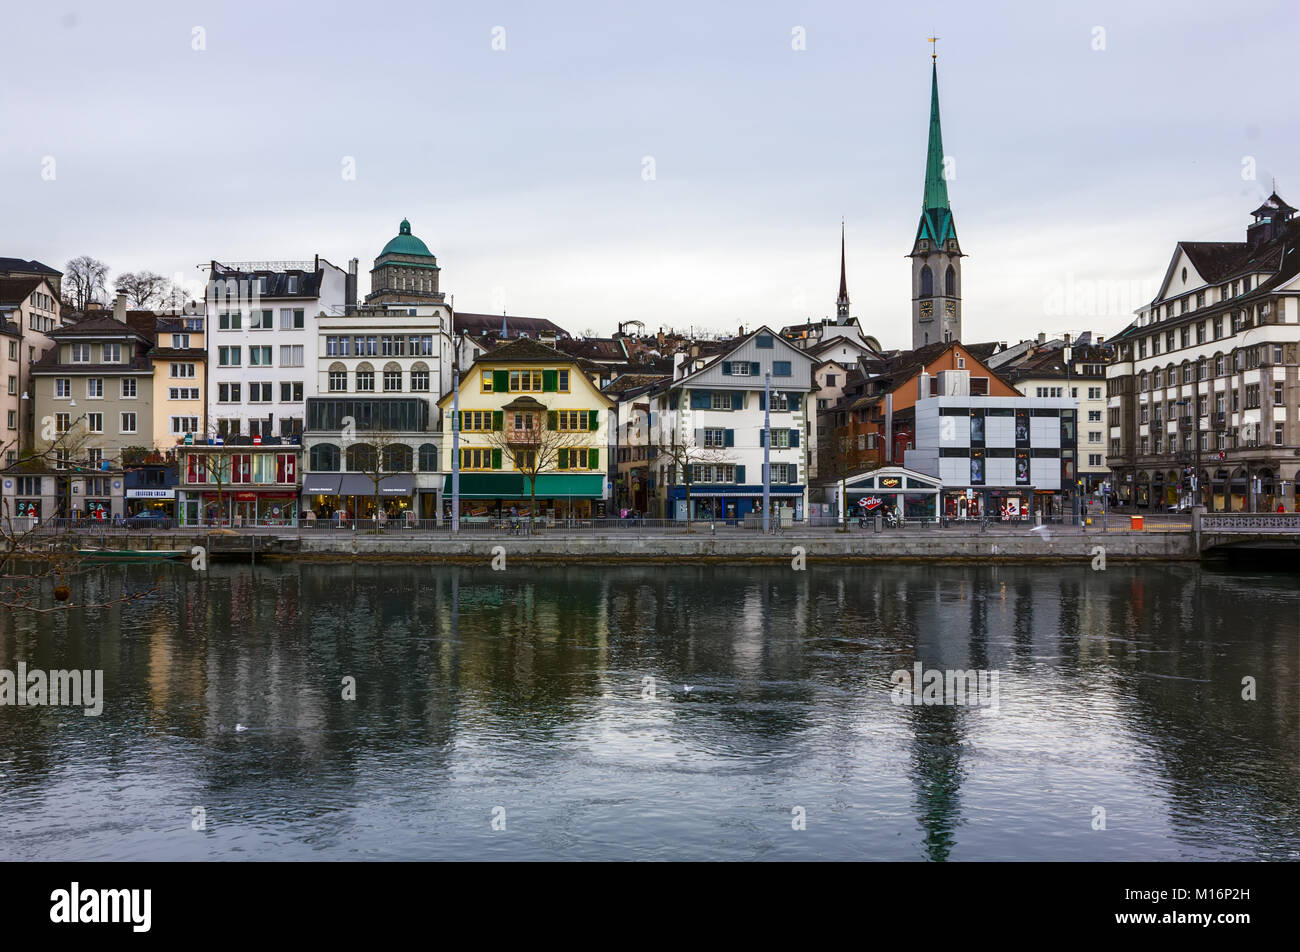 A winter day in Zurich, Switzerland Stock Photo